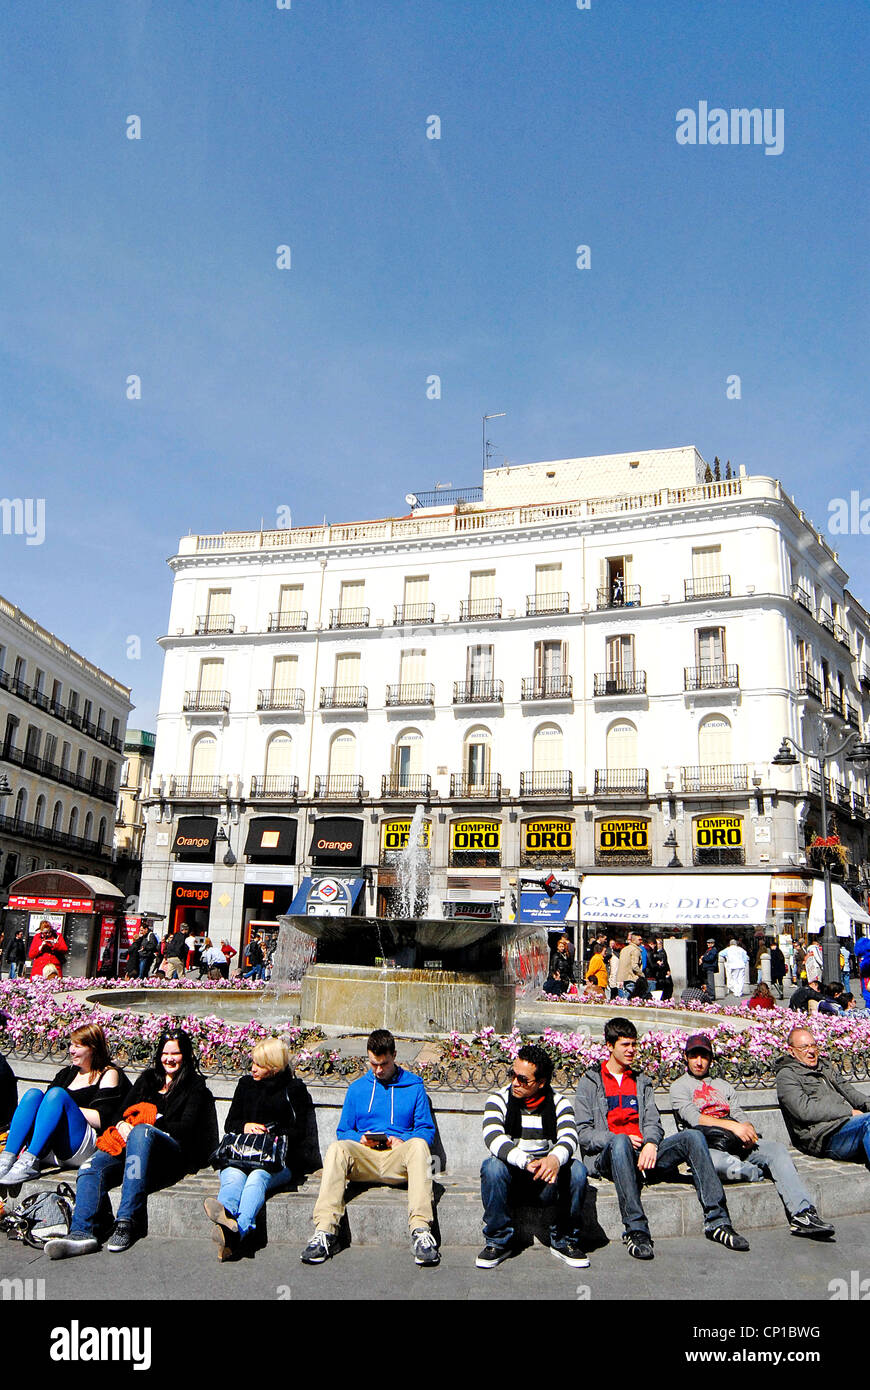 Hotel Europa, Del Sol square, Madrid, Spain Stock Photo - Alamy